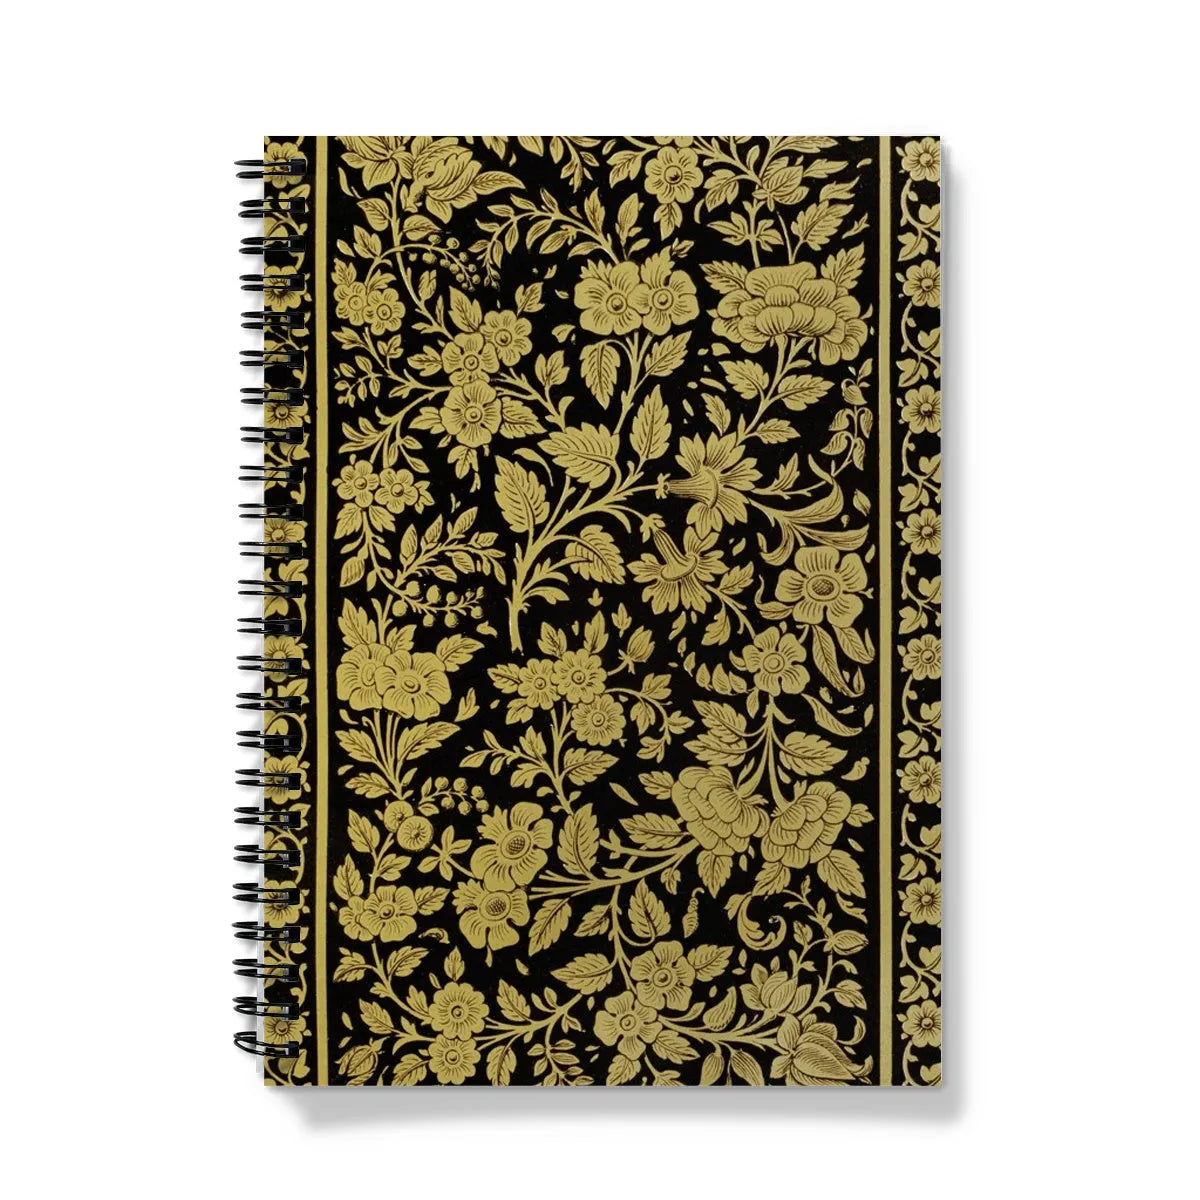 Indian Lacquerwork - Matthew Digby Wyatt Notebook - A5 / Graph - Notebooks & Notepads - Aesthetic Art